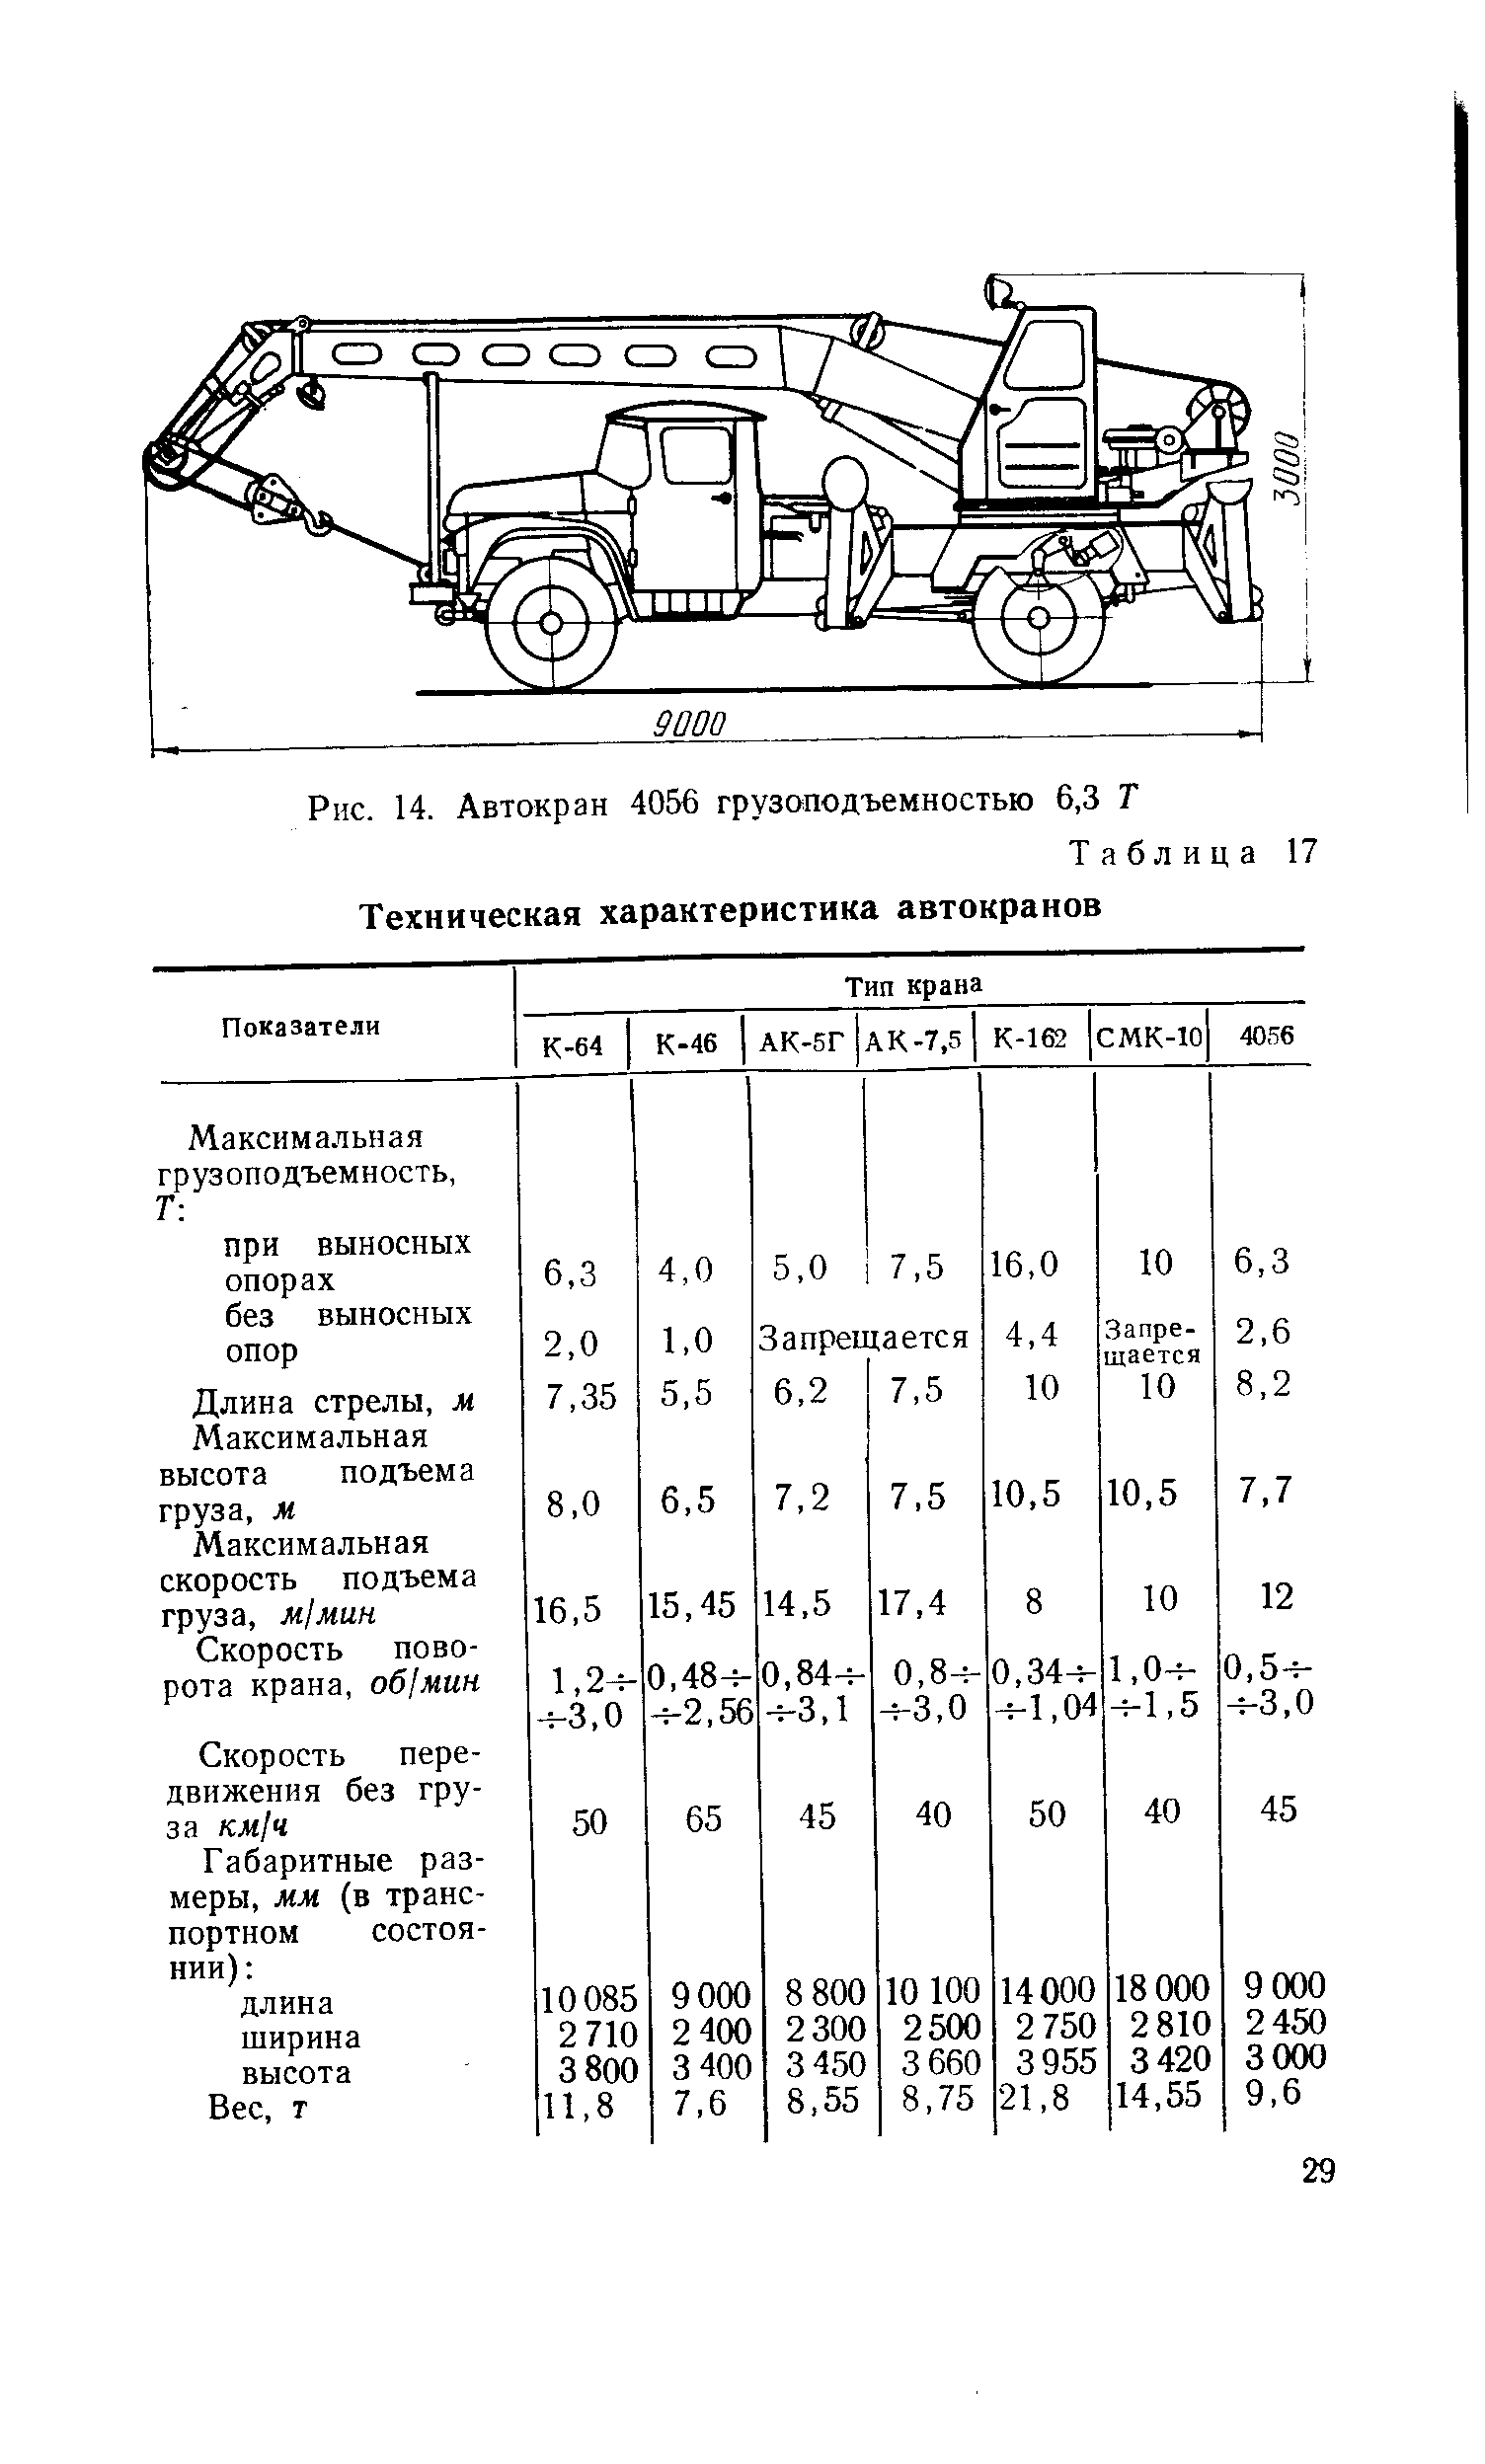 Таблица 17 Техническая характеристика автокранов
